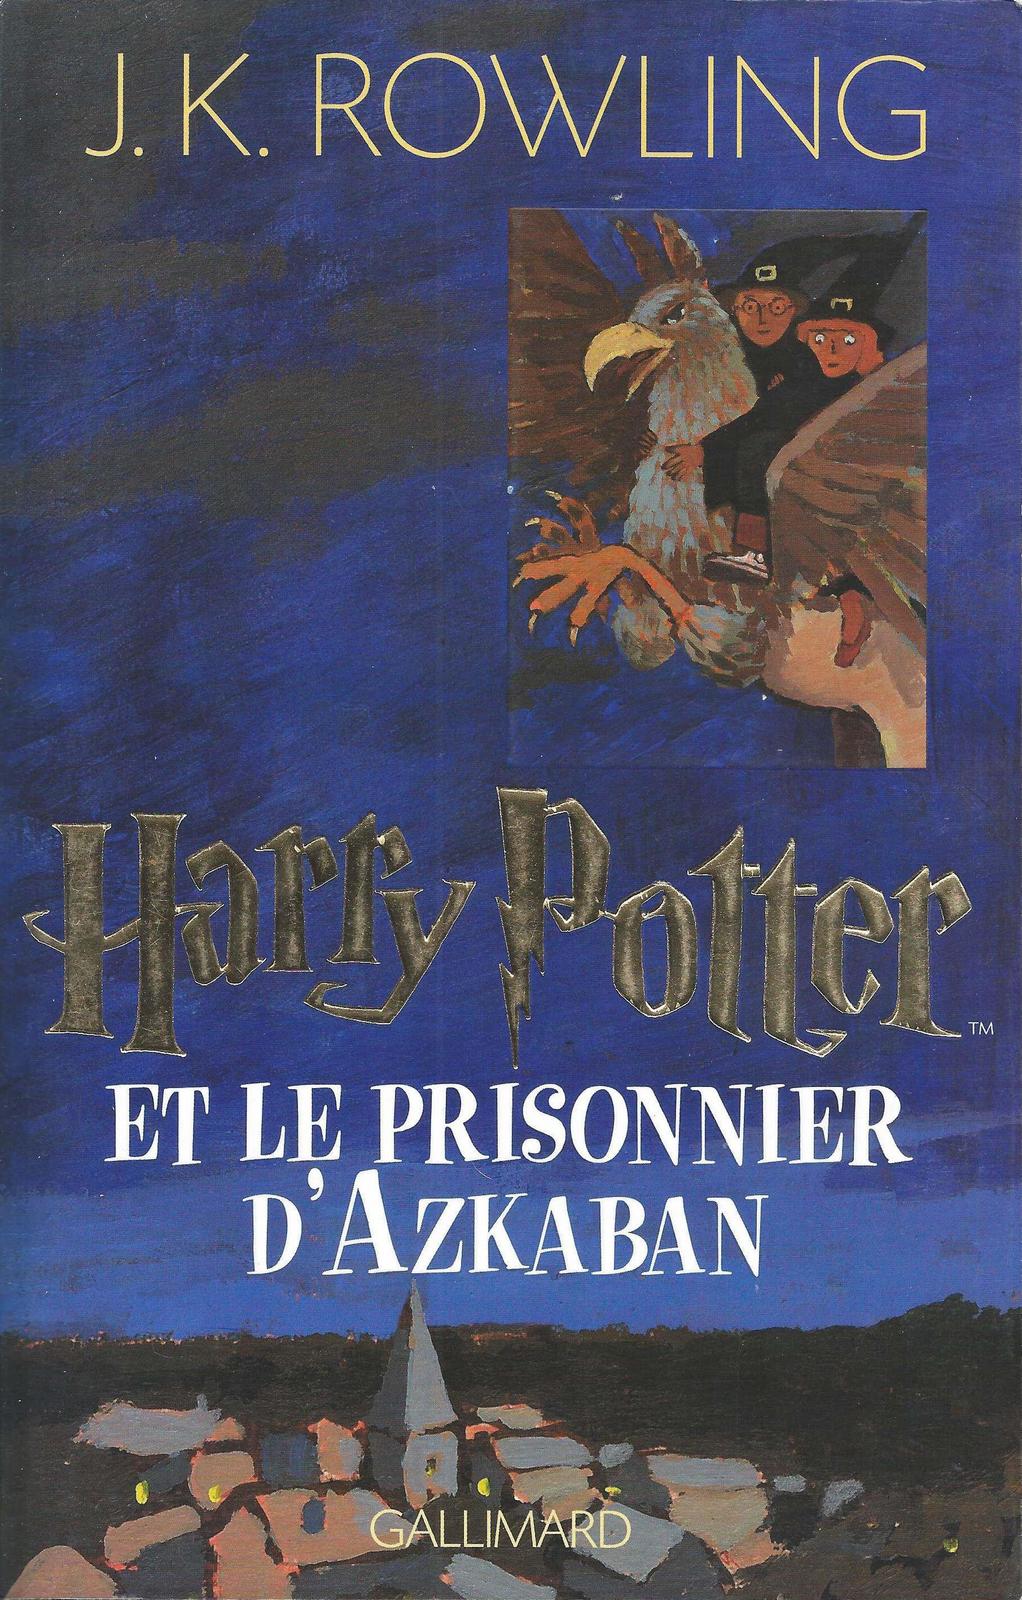 J. K. Rowling: Harry Potter et le prisonnier d'Azkaban (French language, 2006, Gallimard Jeunesse)